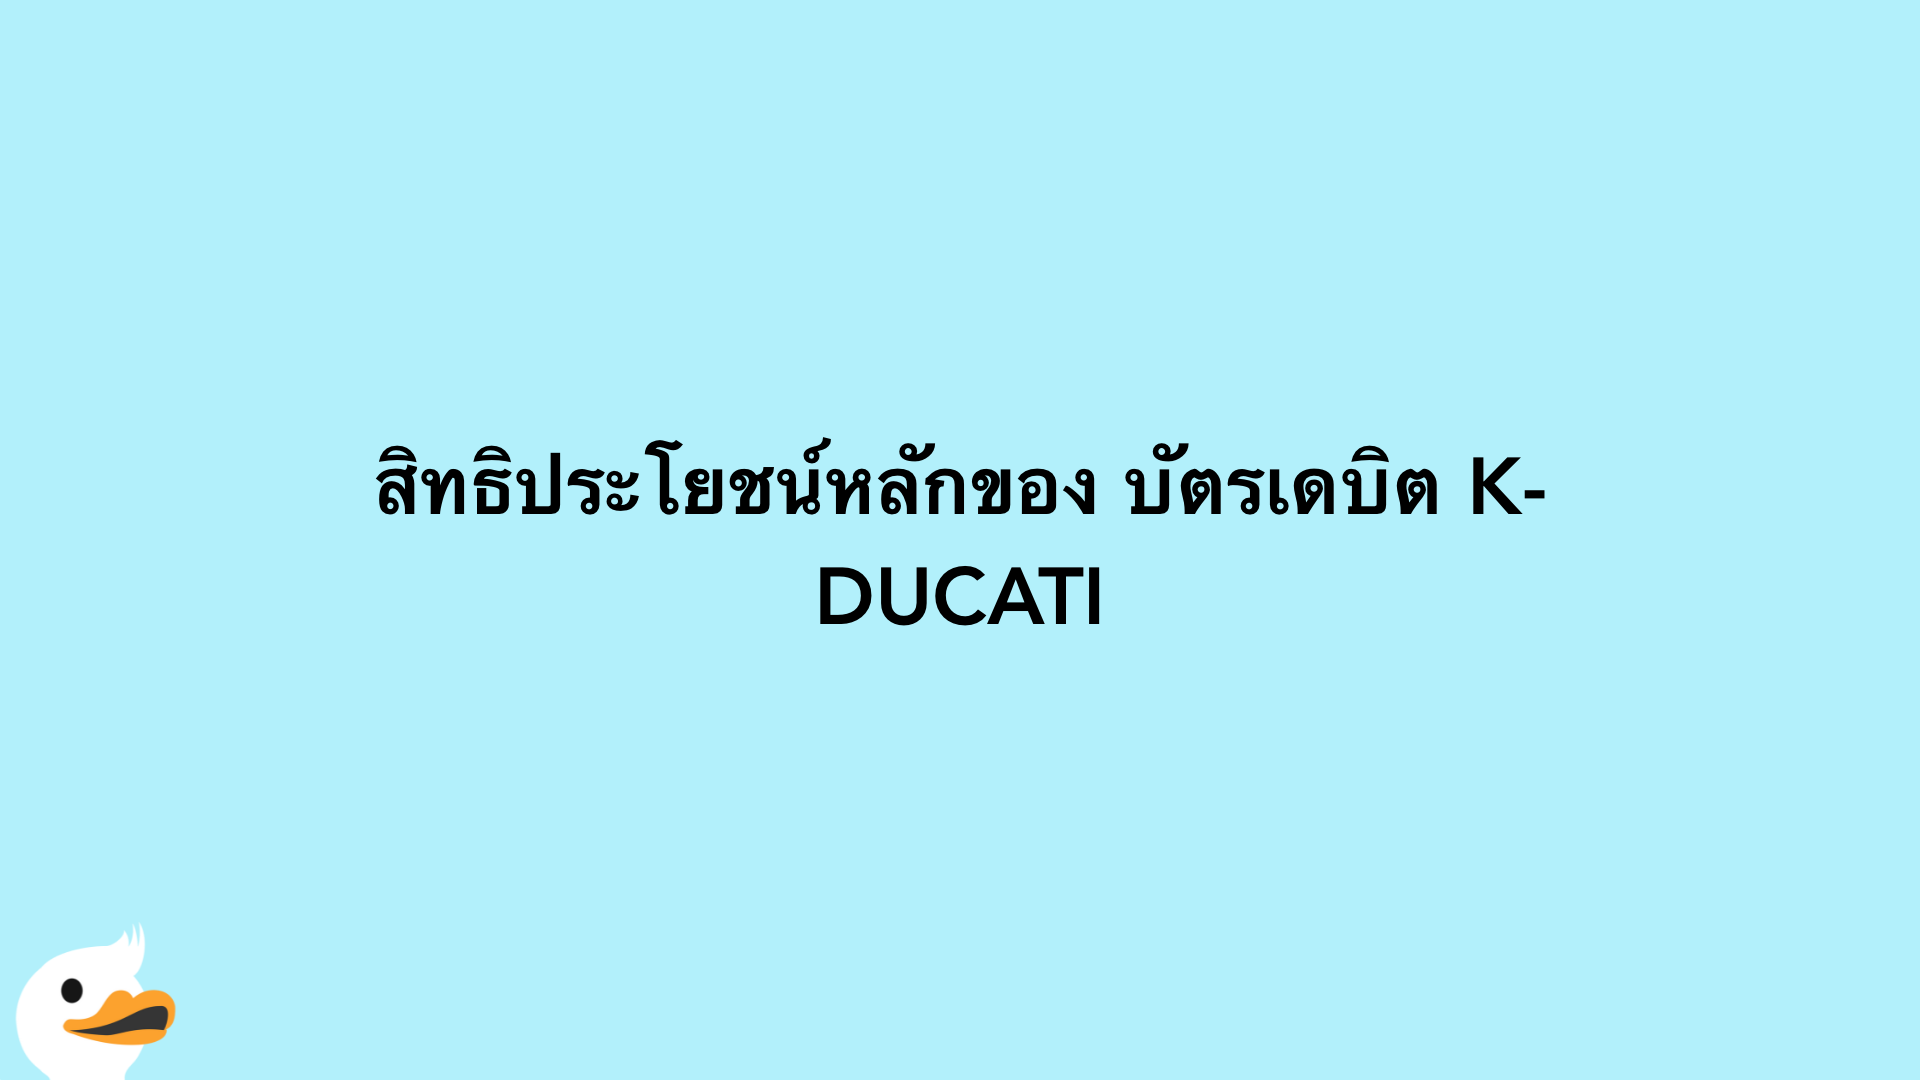 สิทธิประโยชน์หลักของ บัตรเดบิต K-DUCATI